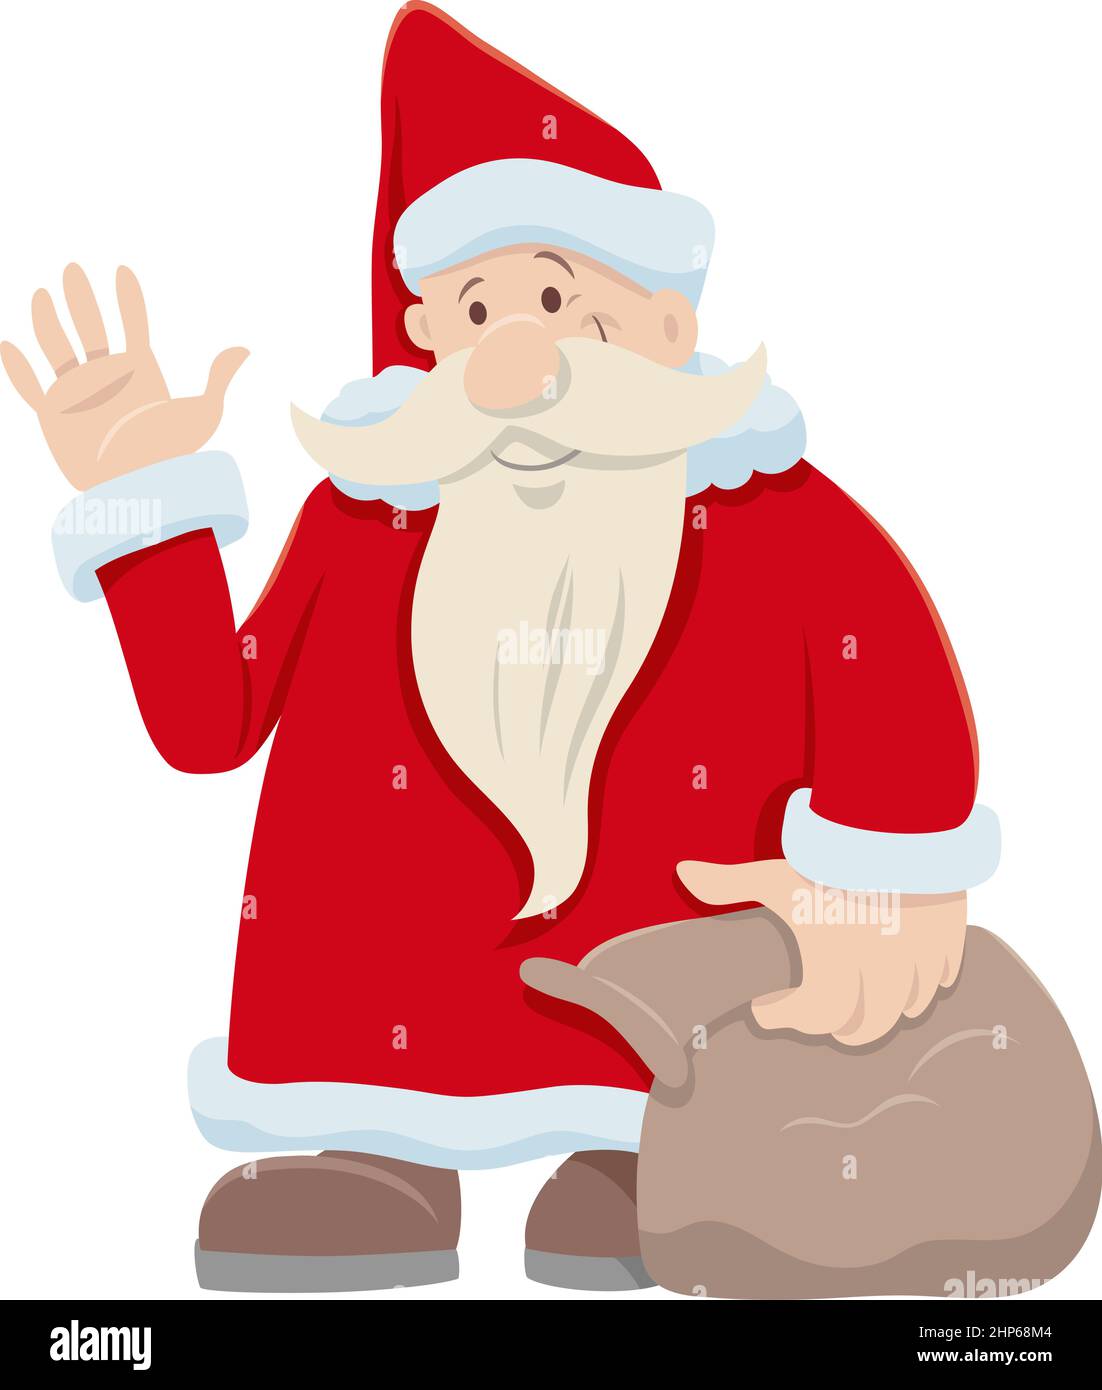 Weihnachtsmann Zeichentrickfigur mit Sack von Geschenken auf Weihnachtszeit Stock Vektor